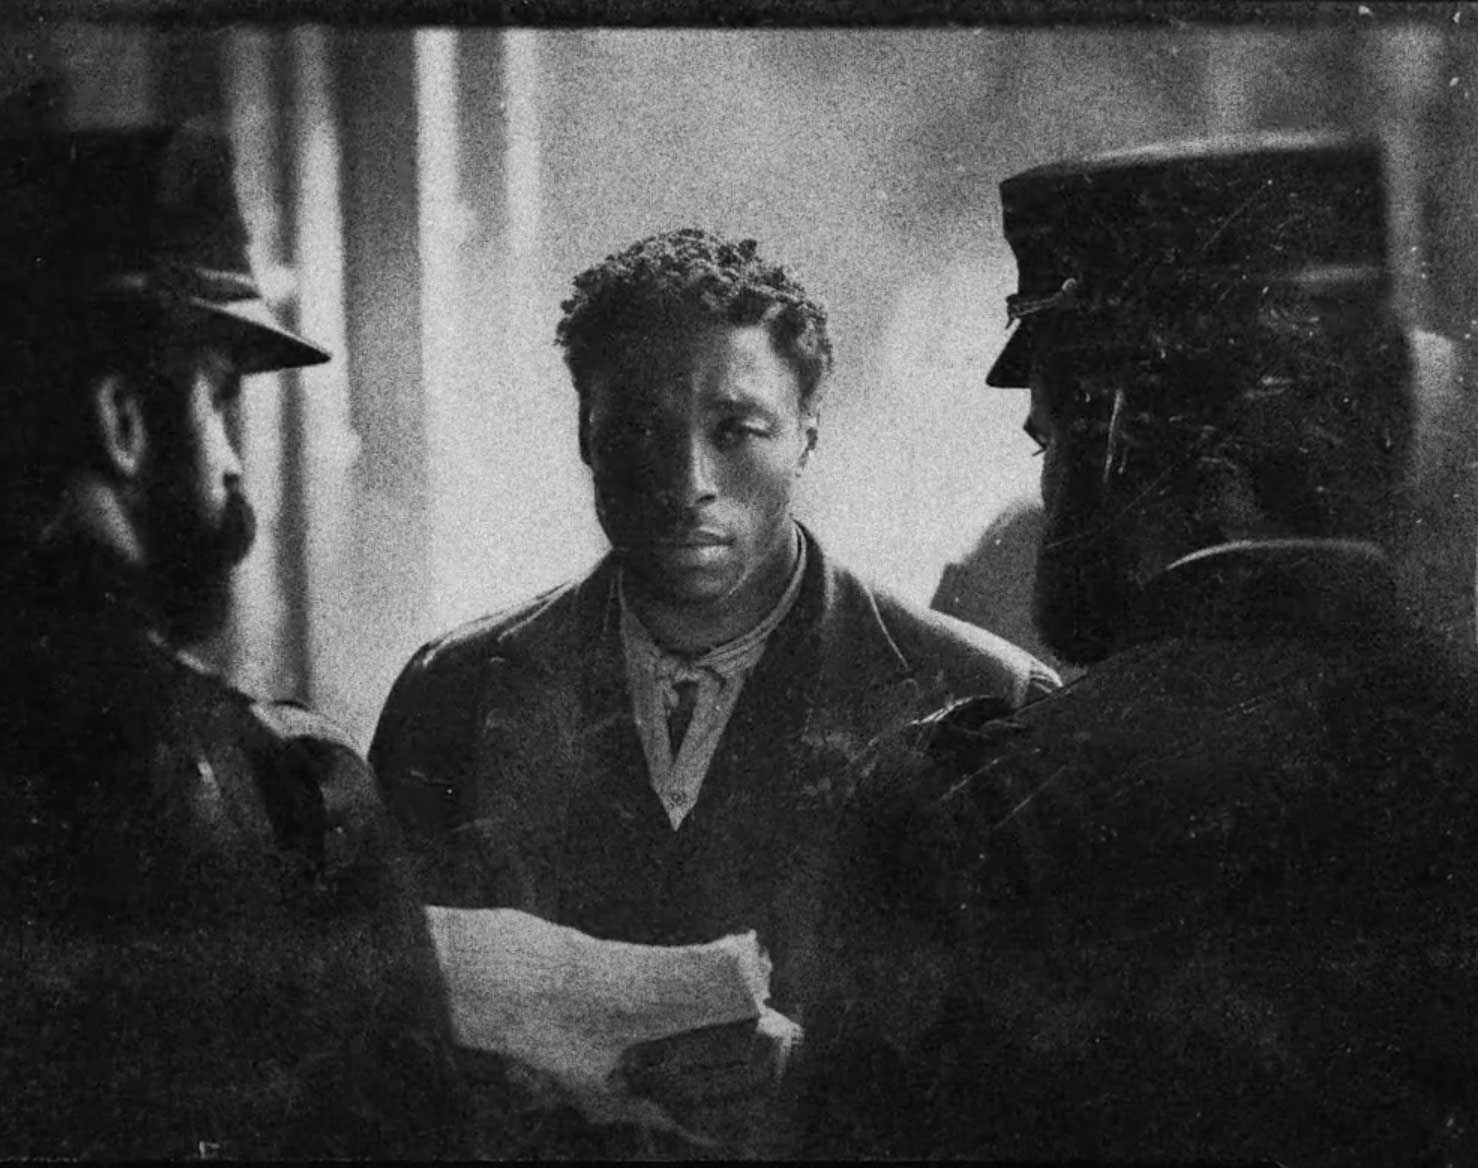 Film still of Black man securing bond. 